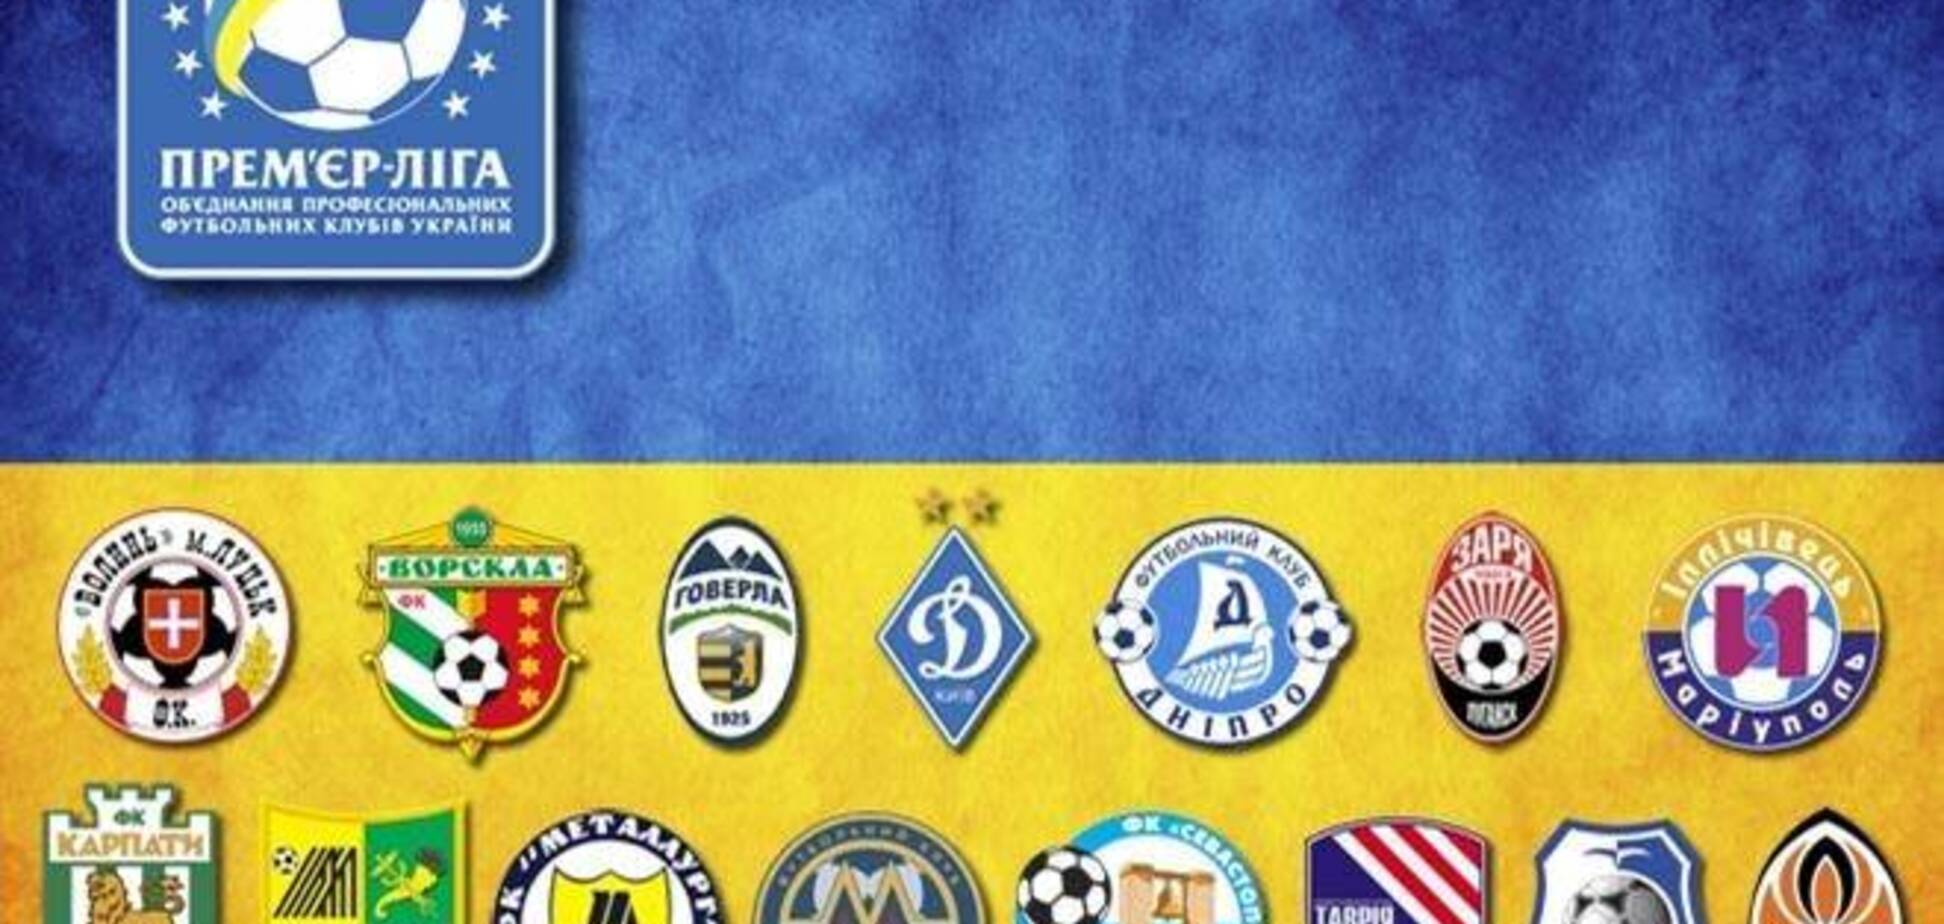 Рейтинг эмблем украинских футбольных клубов. Интерактивная инфографика